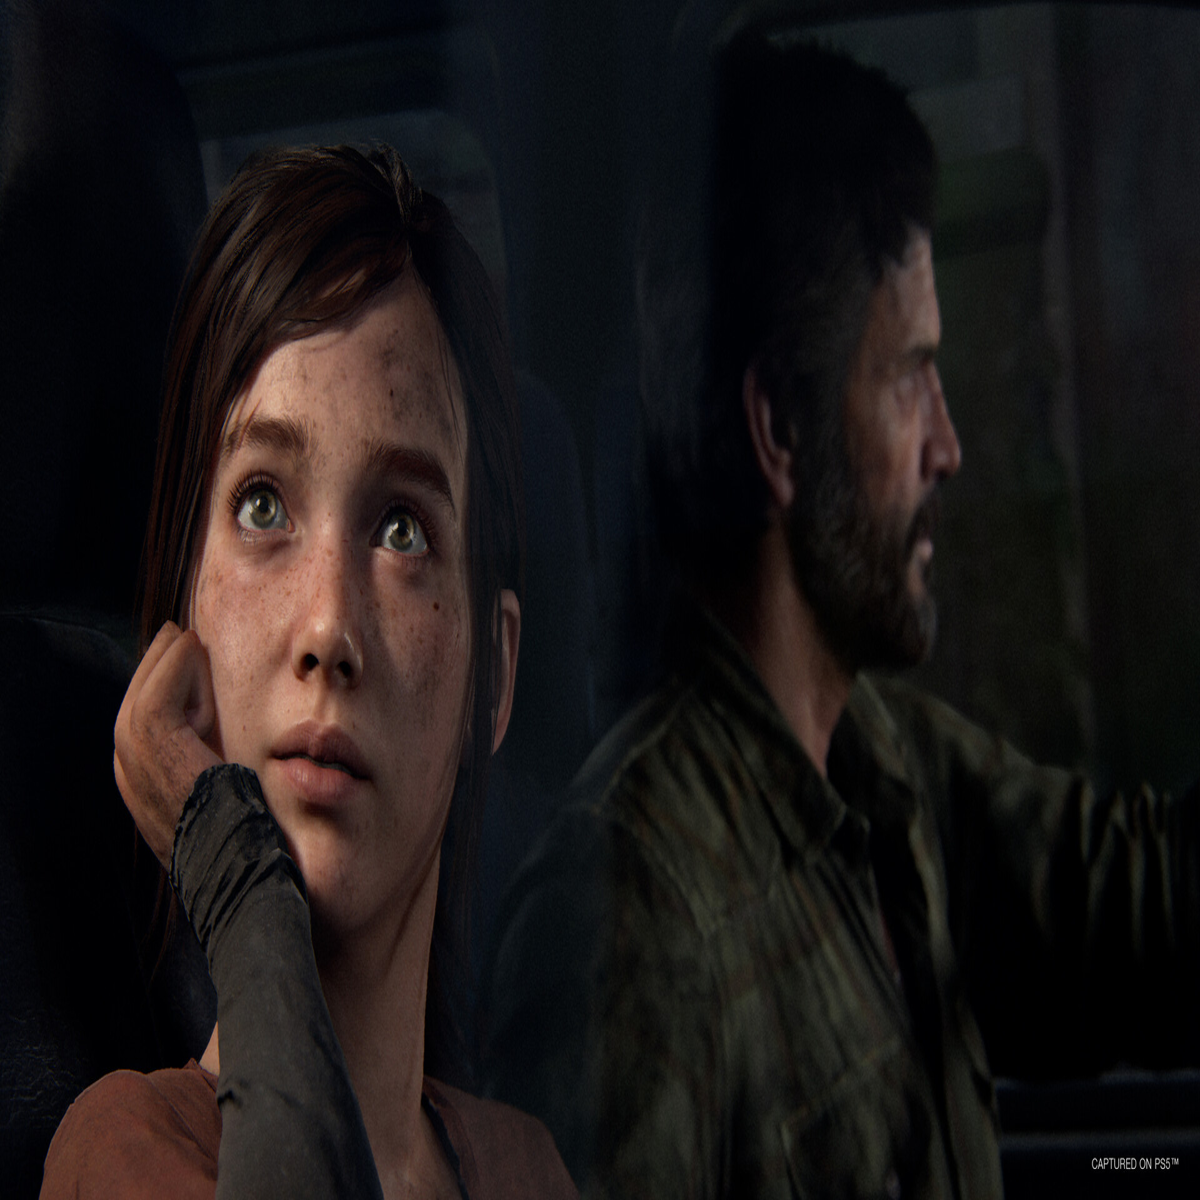 Meu PC roda The Last of Us Part I? Veja requisitos mínimos e recomendados